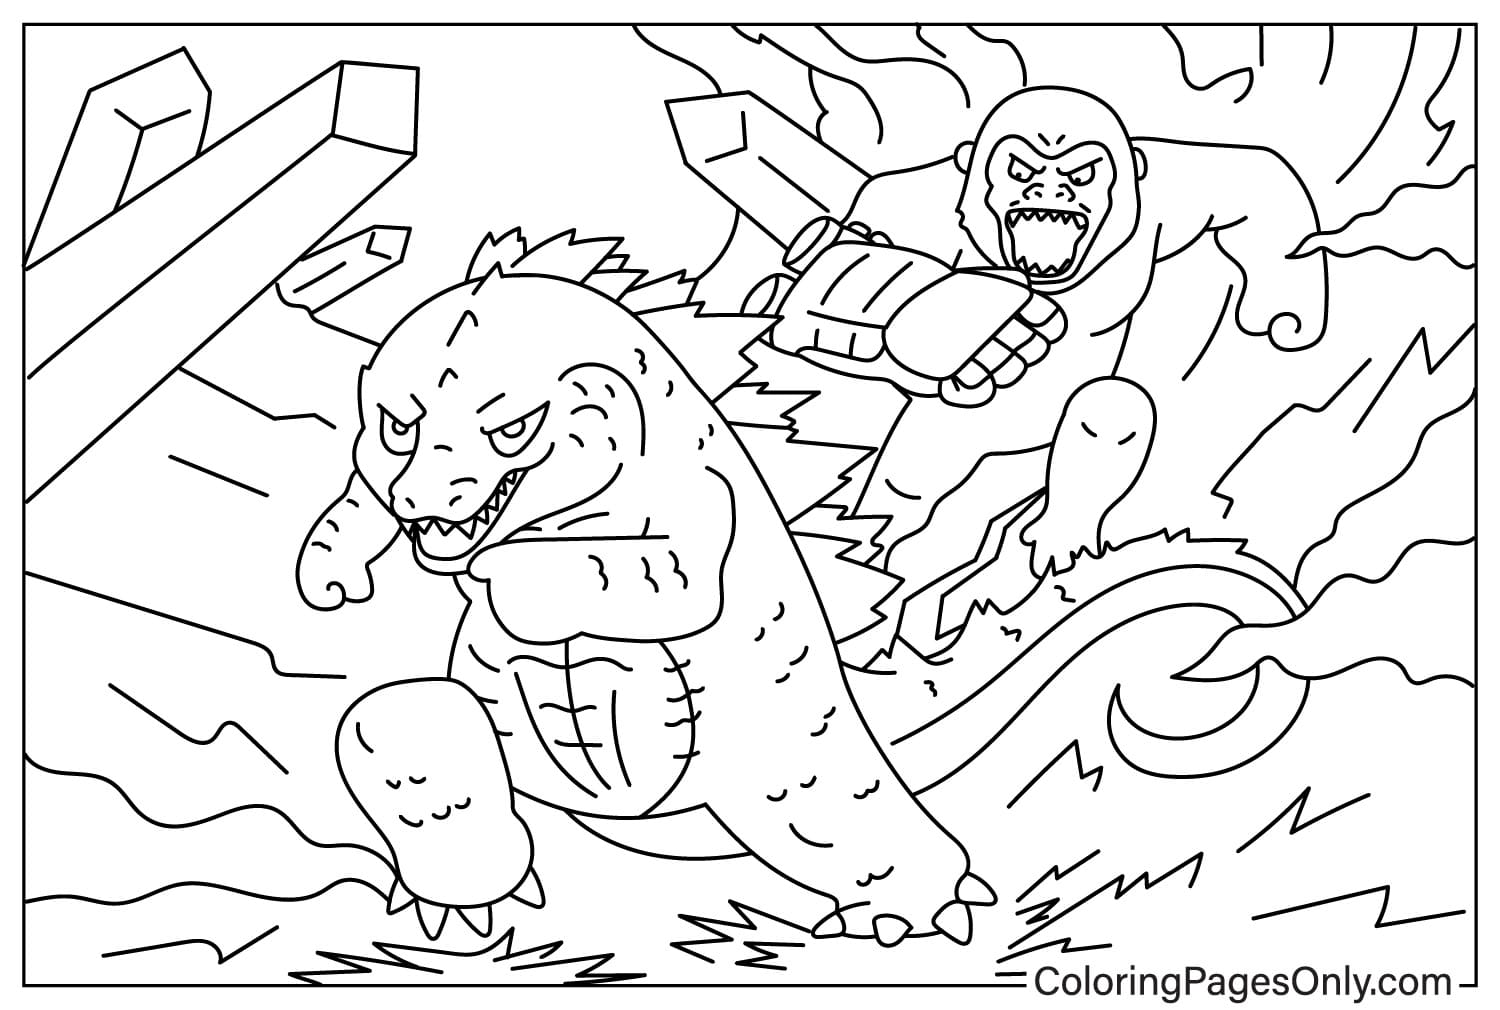 Godzilla x Kong- The New Empire Coloring Sheet from Godzilla x Kong: The New Empire